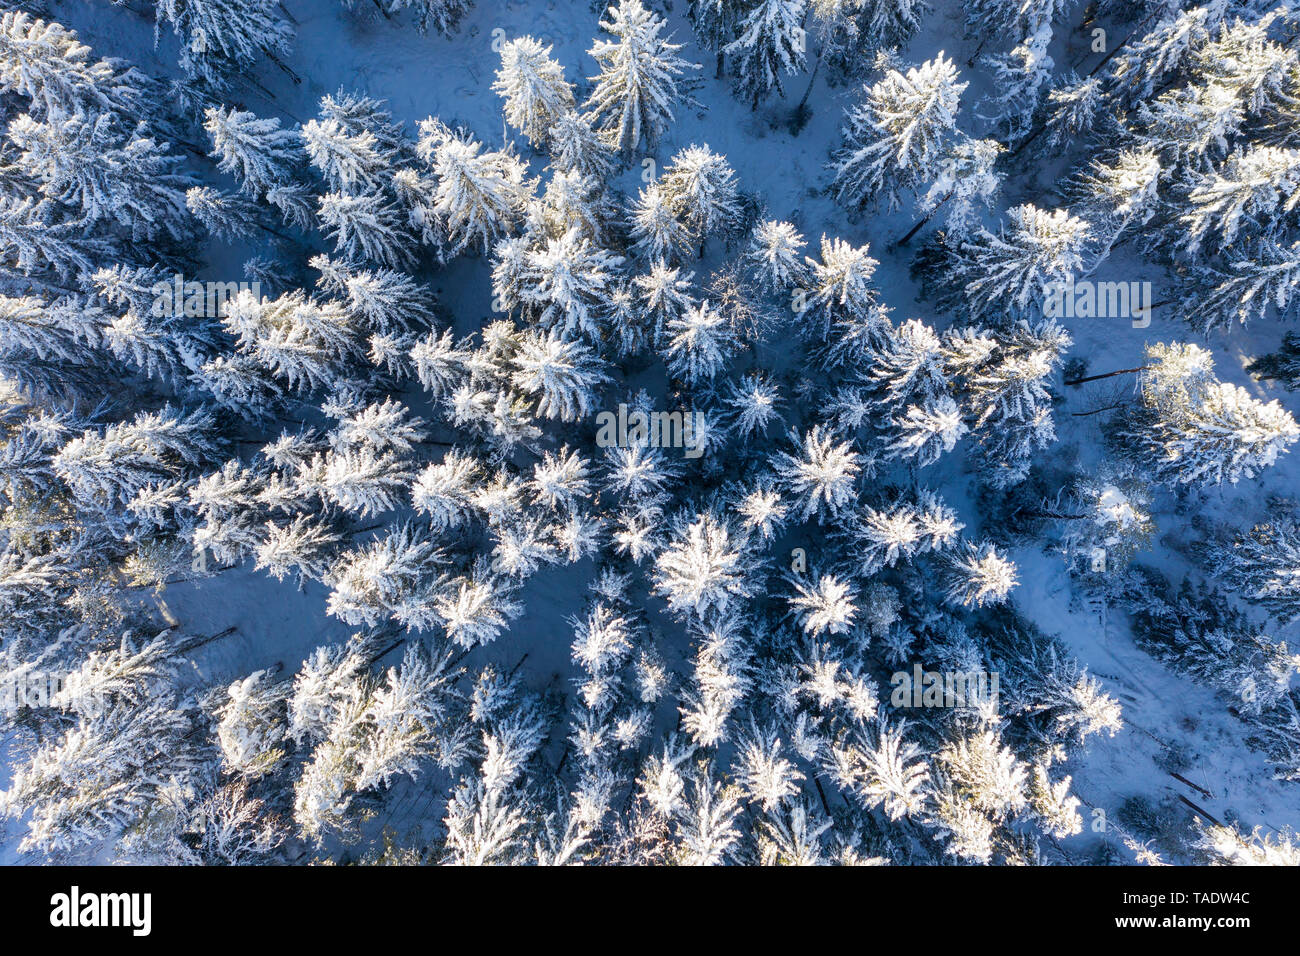 Germany, Bavaria, vue aérienne sur la forêt d'épinettes enneigées Banque D'Images